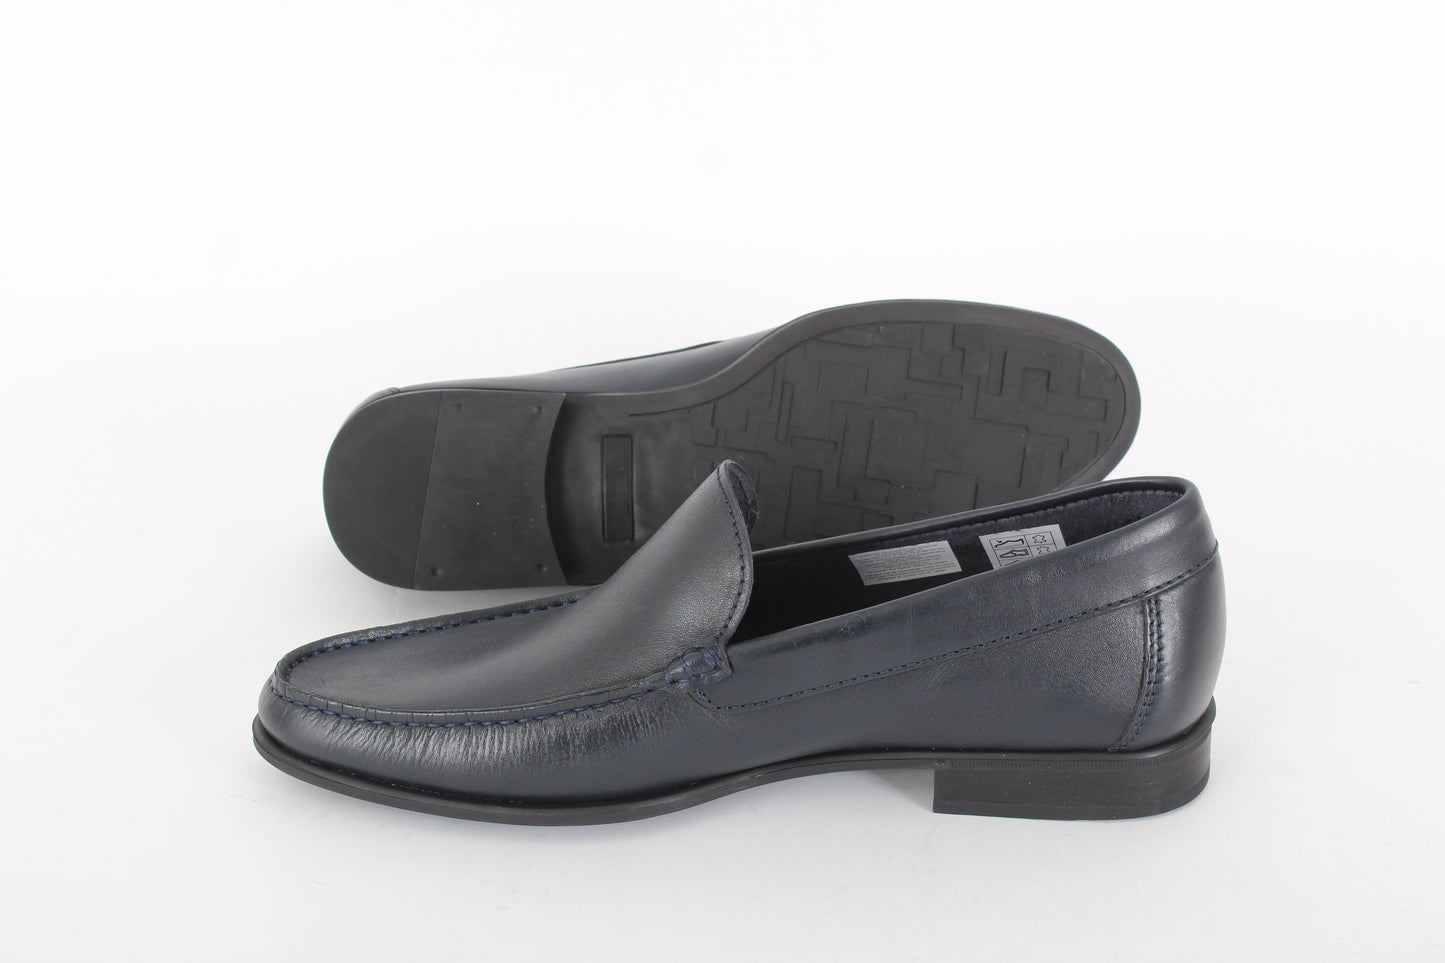 ARIZONA JOE Slip-on loafers